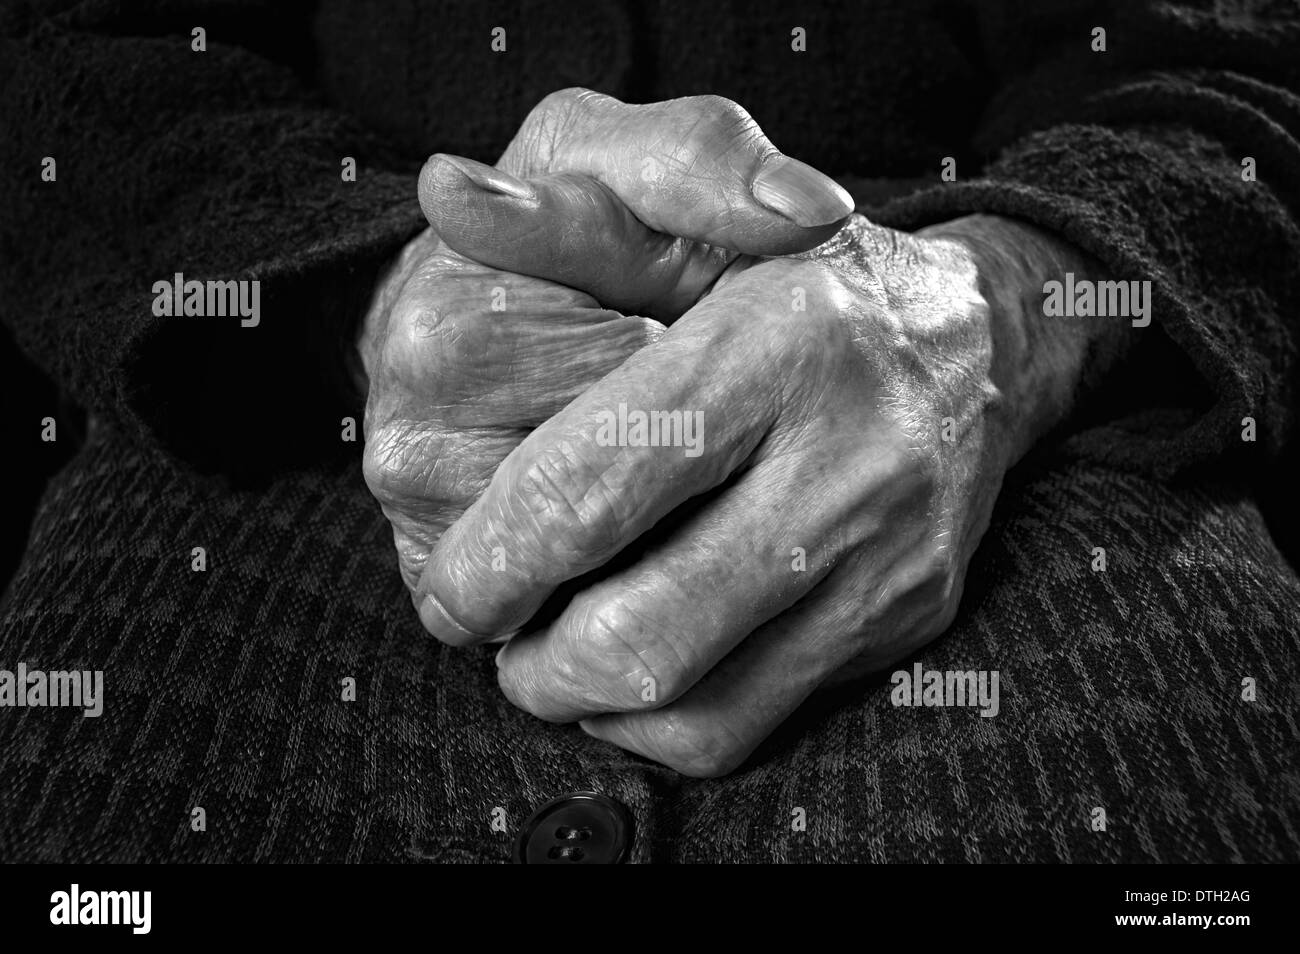 Nahaufnahme einer alten Frau die Hände. Schwarz / weiß Bild. Stockfoto